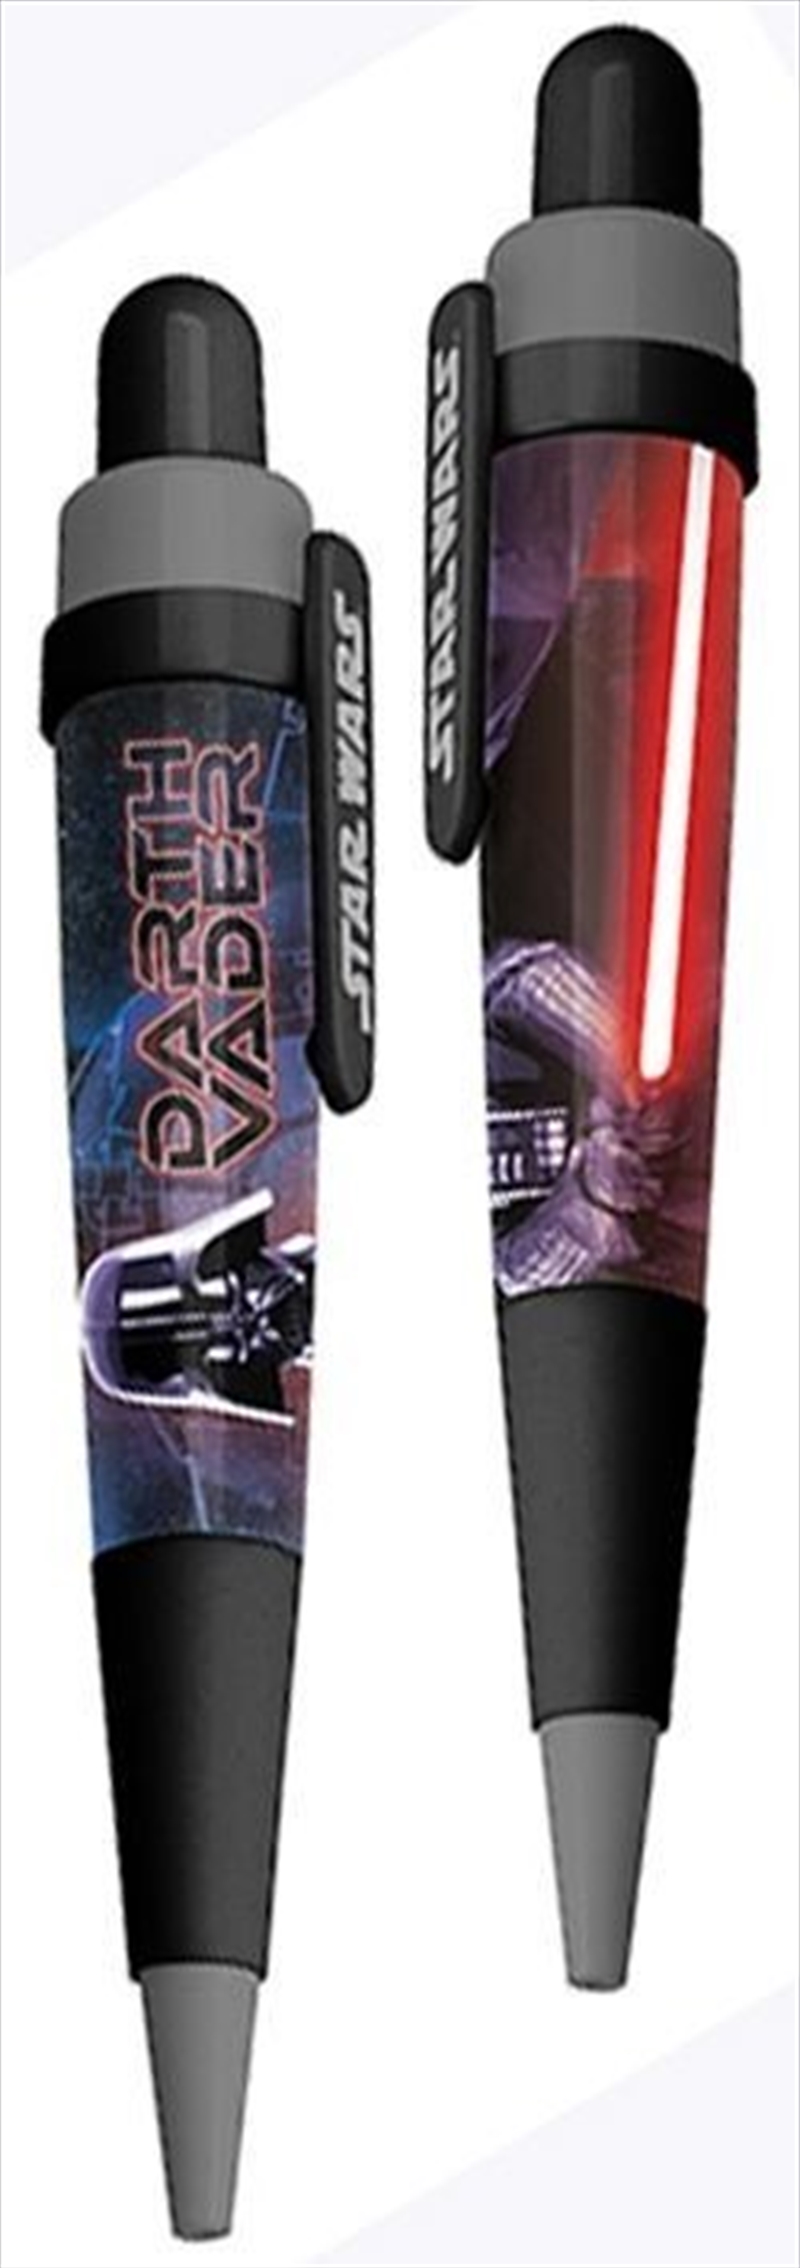 Star Wars Musical Pen Darth Vader | Merchandise